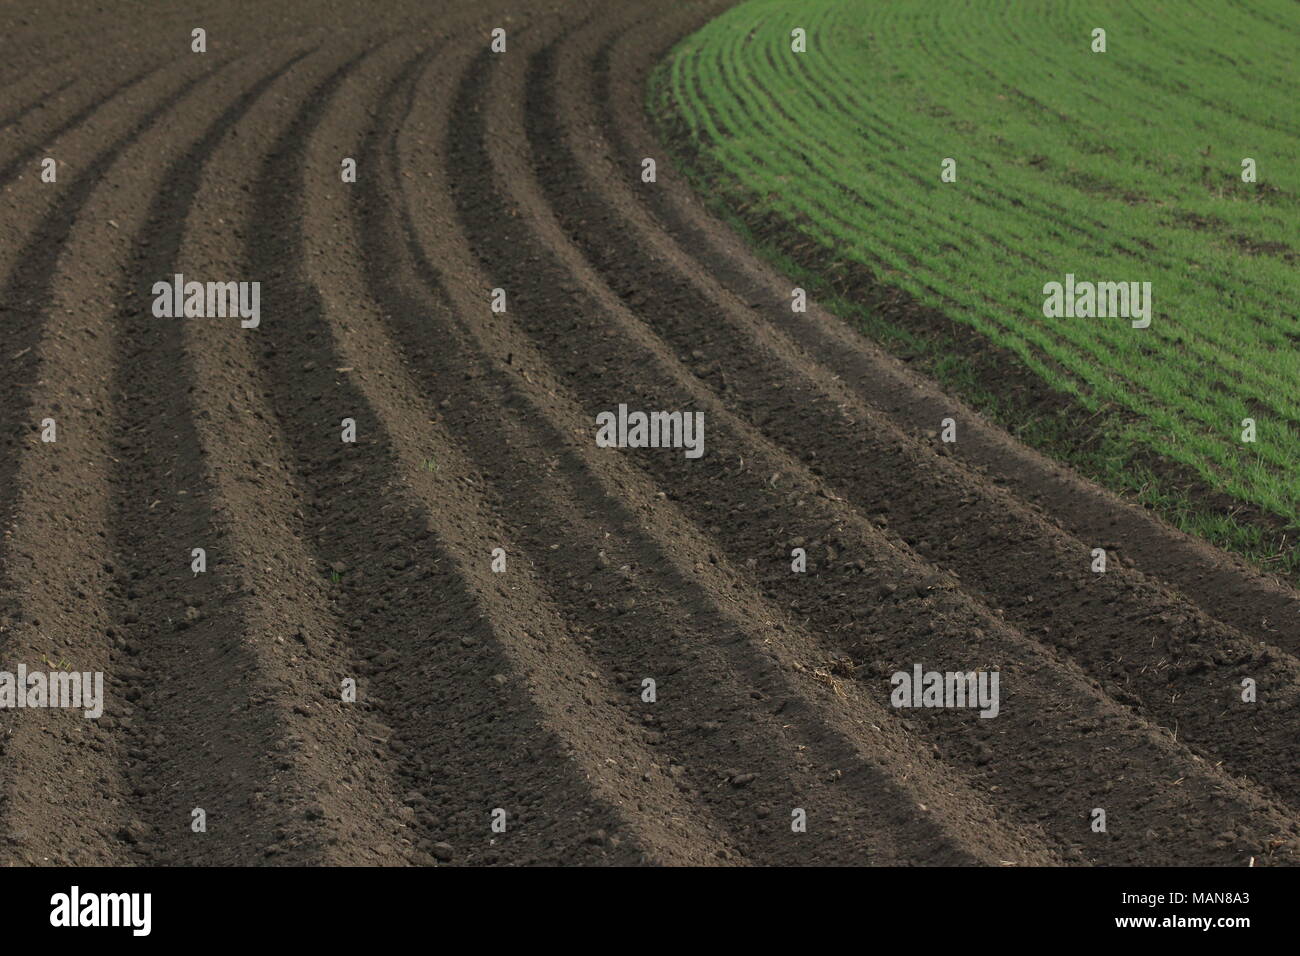 Agricoltura: fresco campo arato Foto Stock